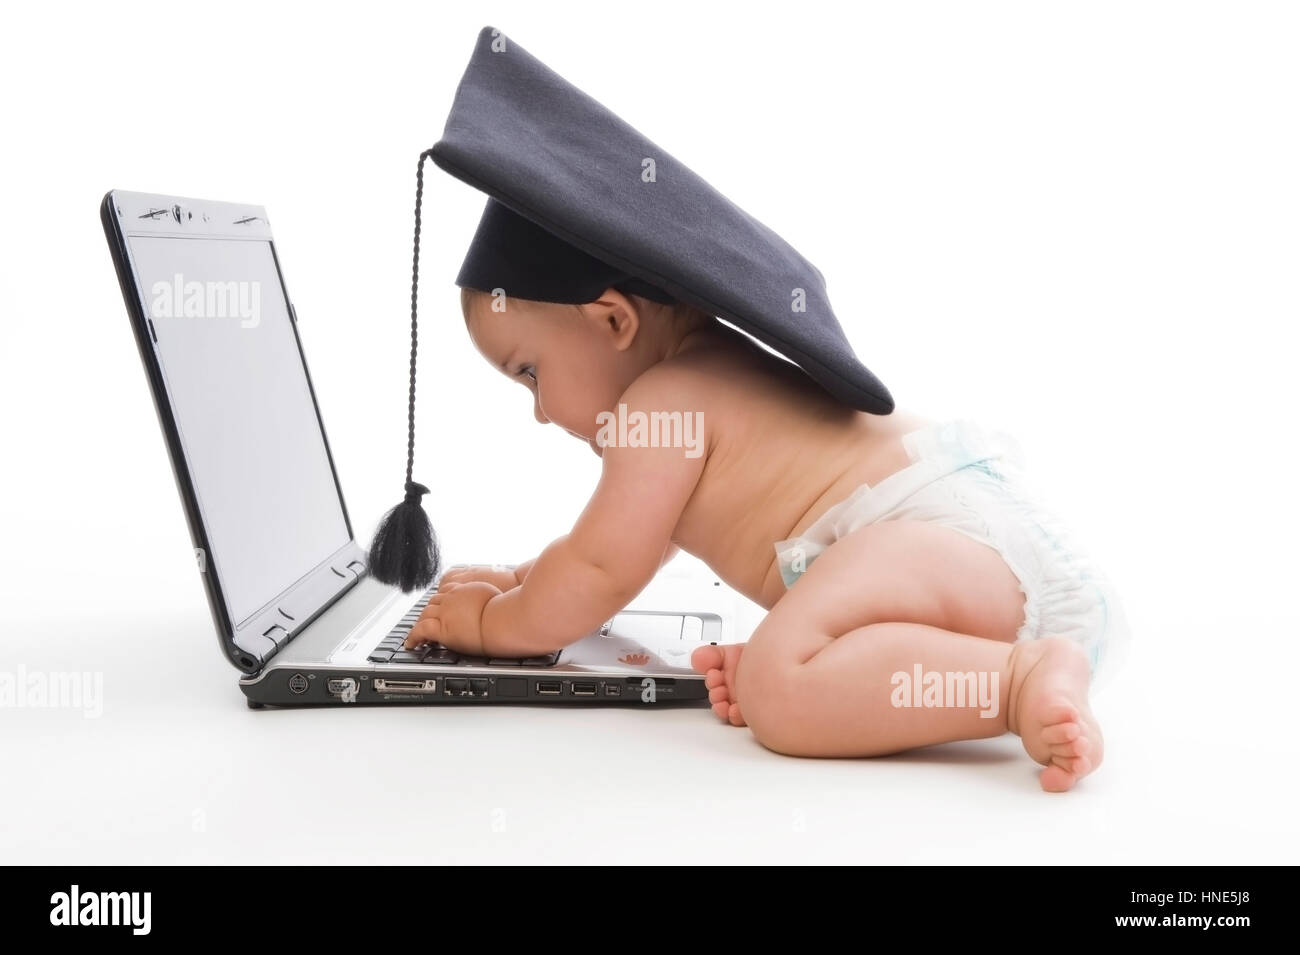 Model release, Kleinkind, 8 Monate, mit Doktorhut und Laptop - little child with doctoral cap using laptop Stock Photo